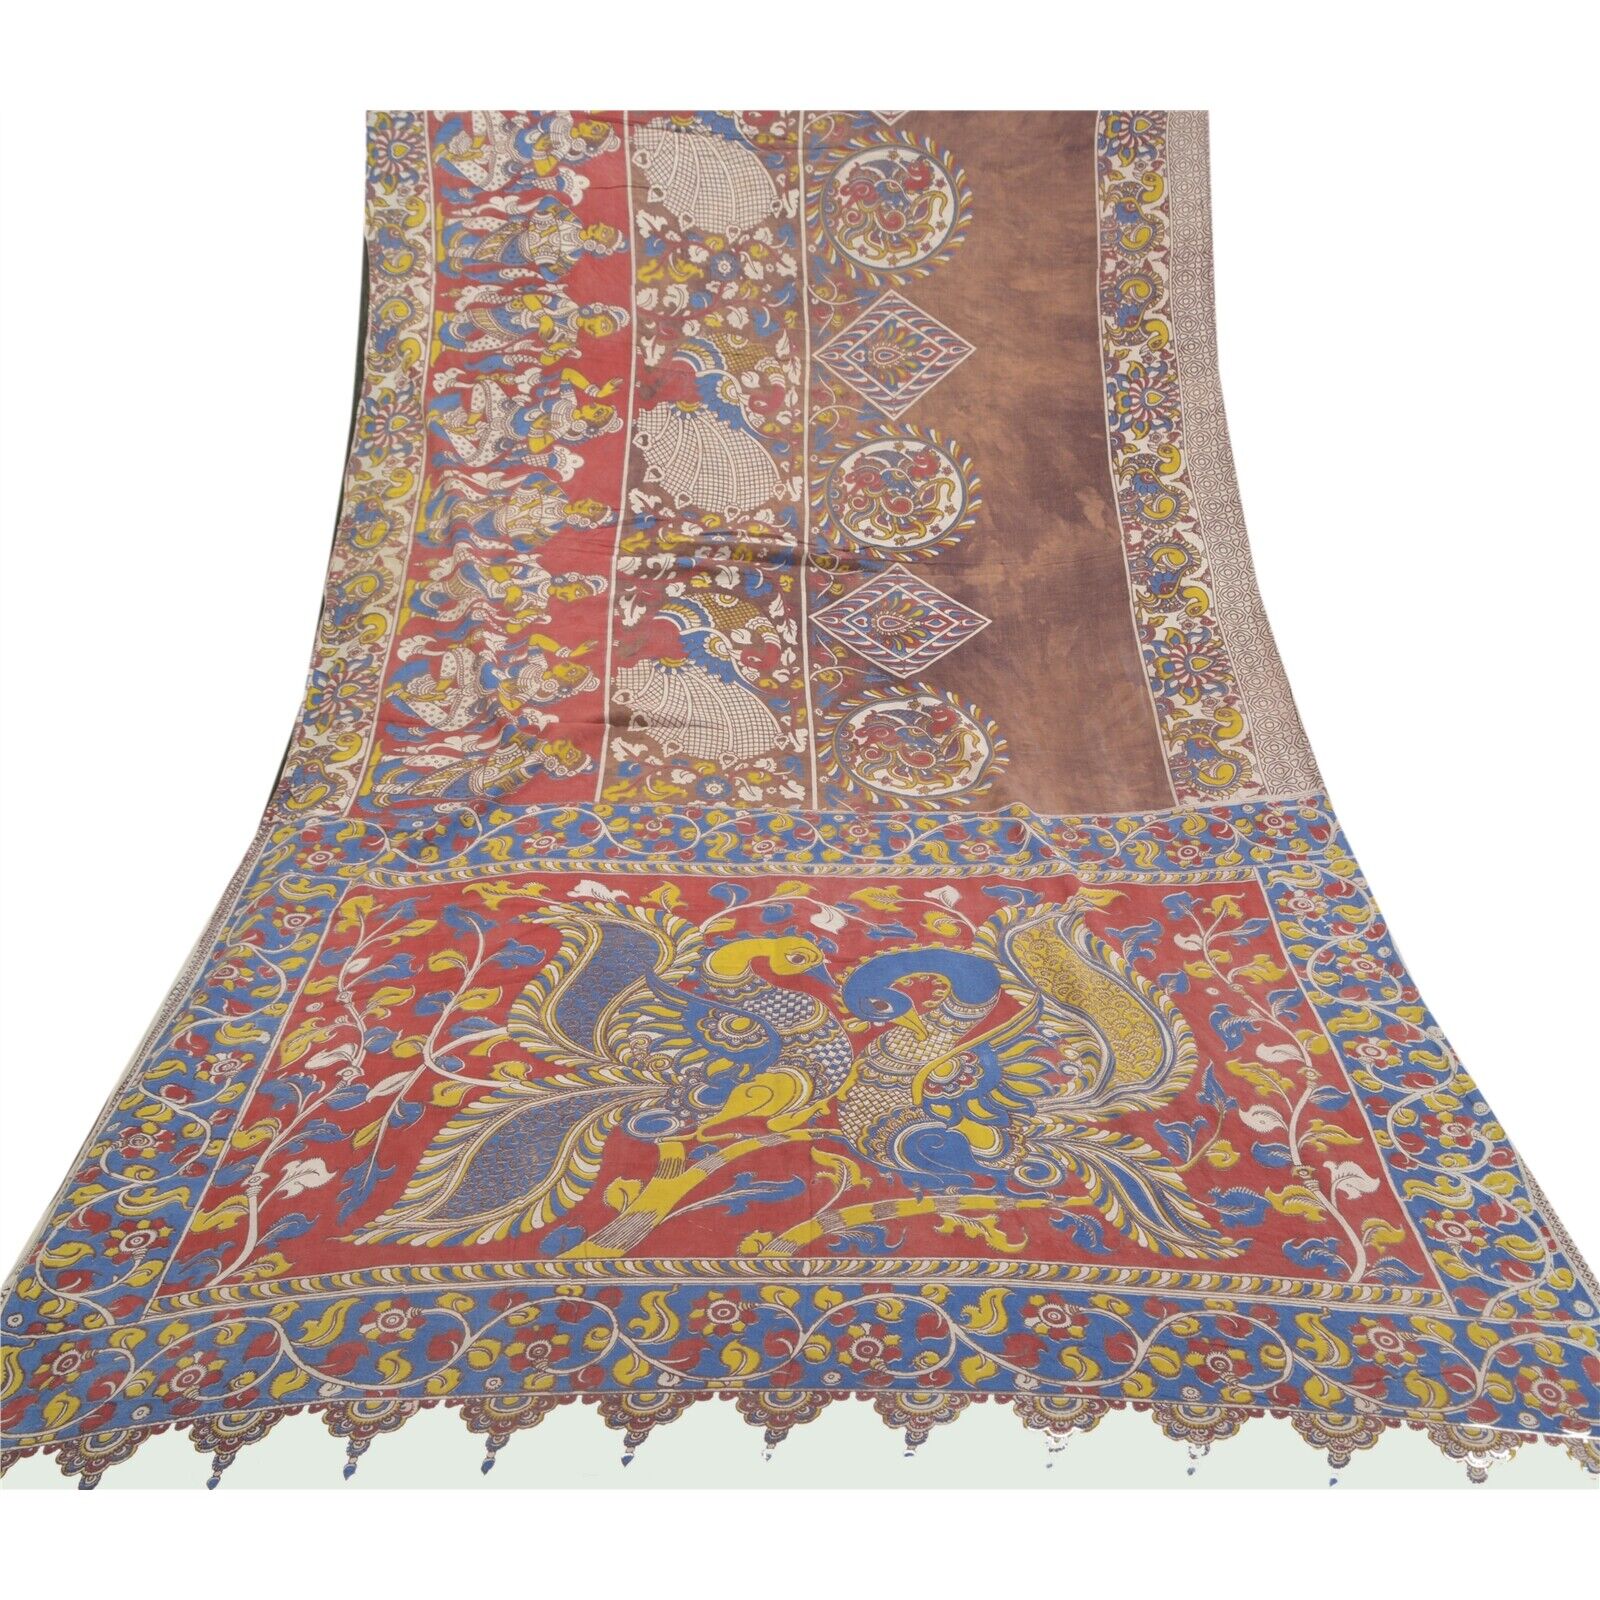 Sanskriti Vintage Indian Sarees Pure Cotton Kalamkari Special Sari Craft Fabric